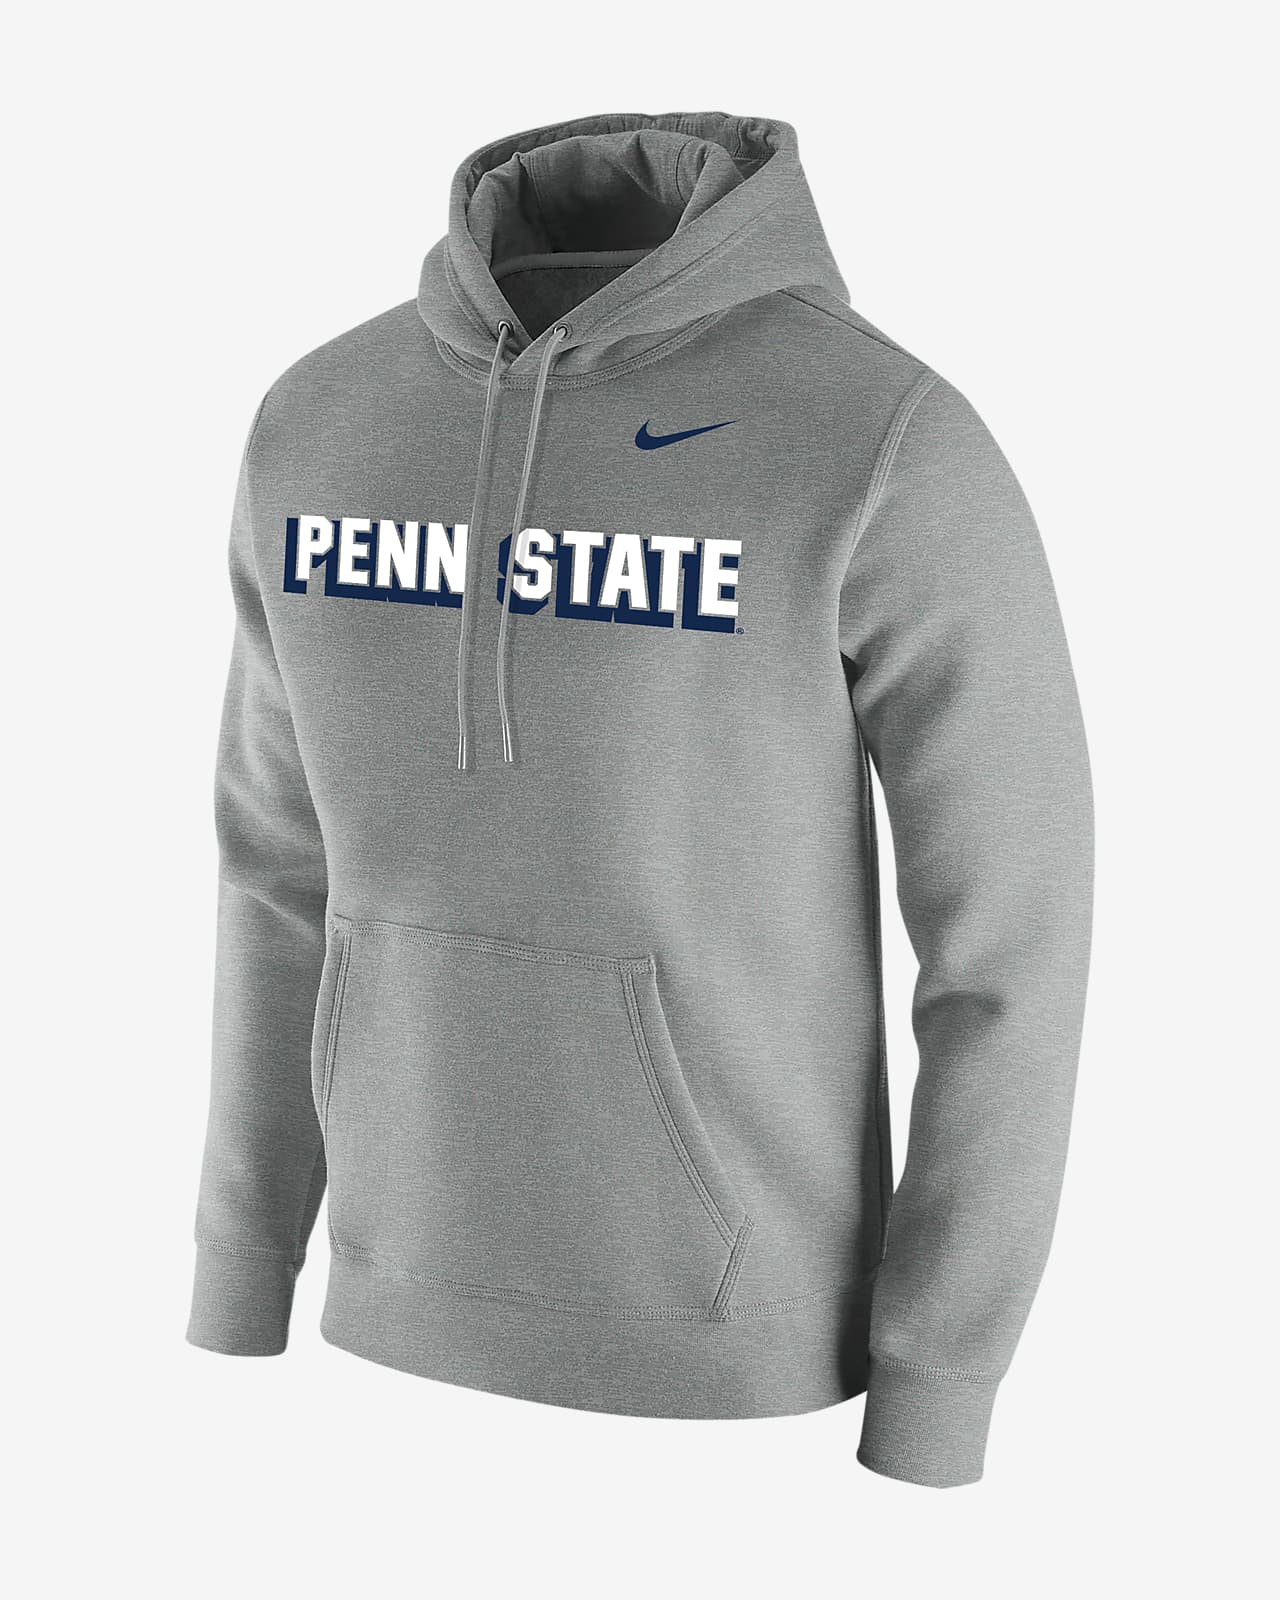 men's nike penn state hoodie